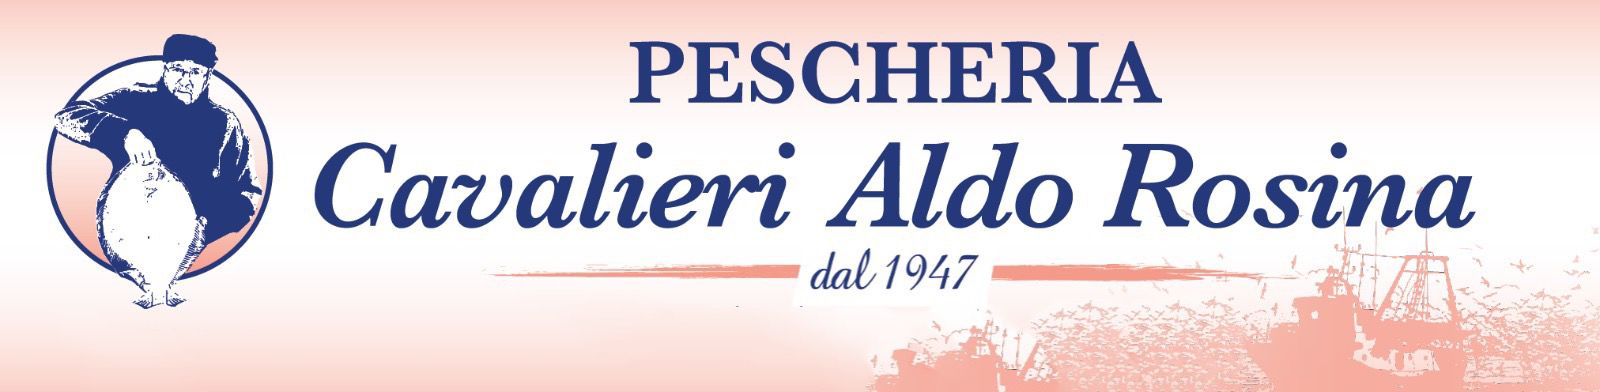 Pescheria Cavalieri Aldo Rosina - Pescheria a Portogaribaldi